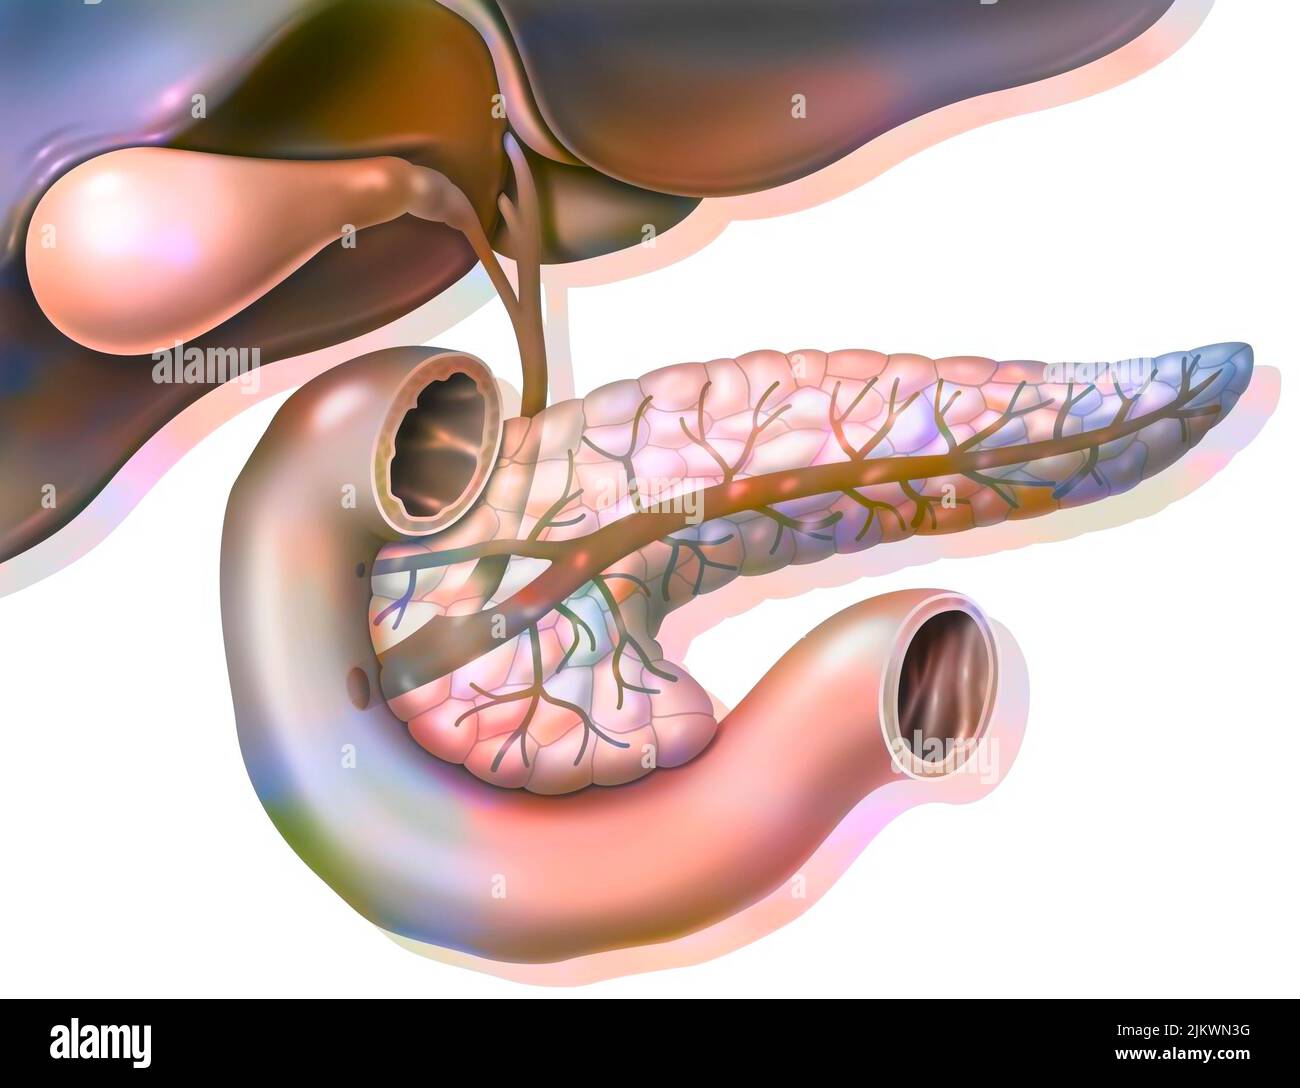 Anatomie der Bauchspeicheldrüse in der anterioren Ansicht mit Gallenblase und gemeinsamem Gallengang. Stockfoto